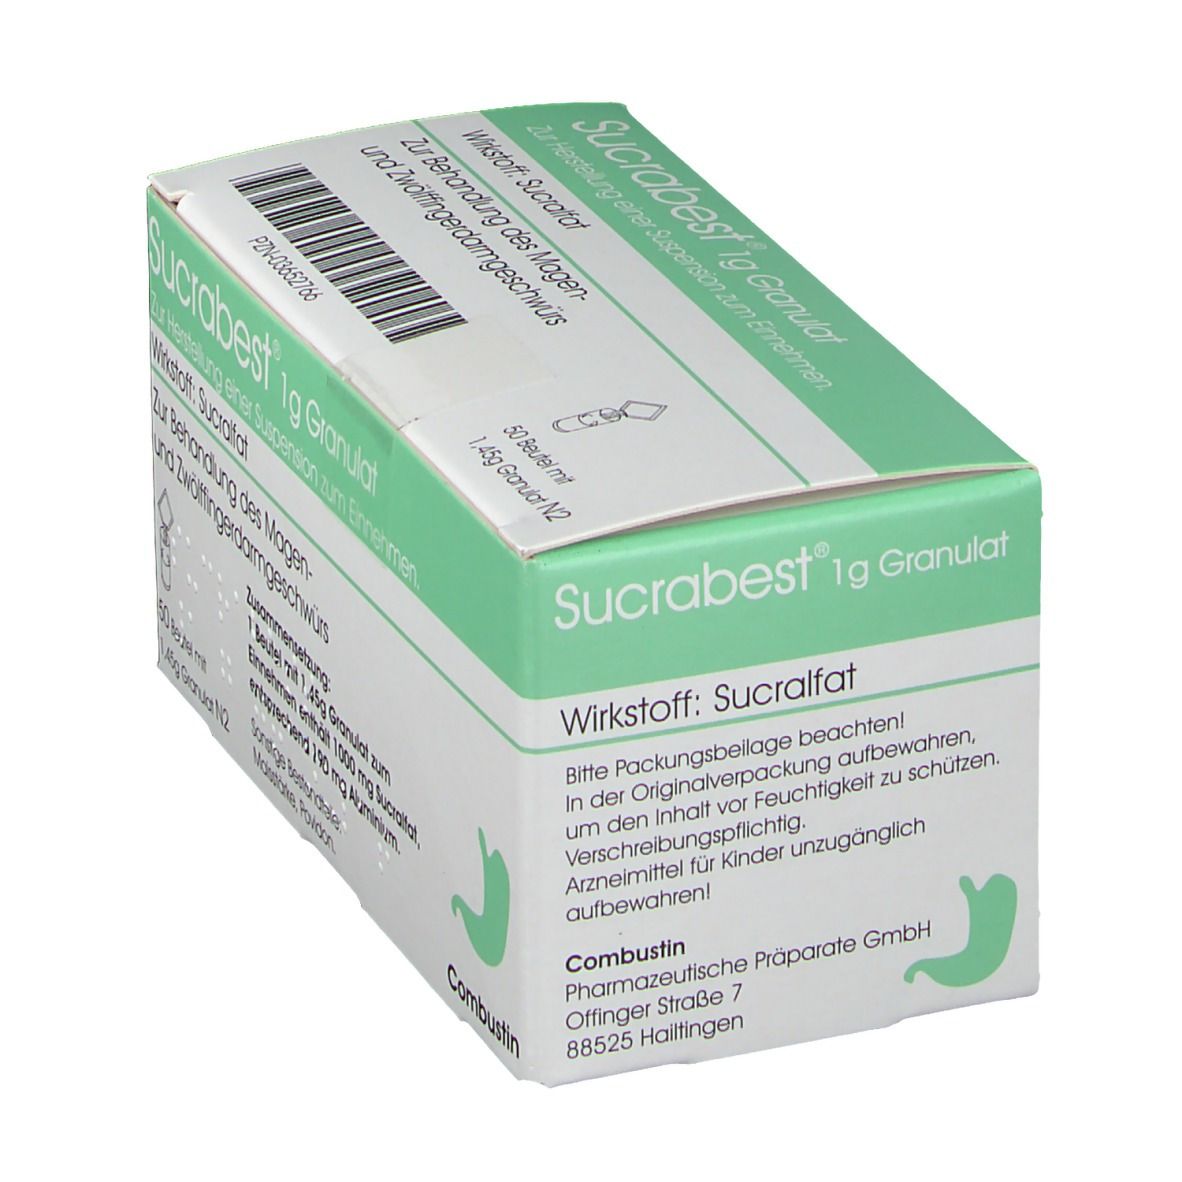 Sucrabest® 1 g